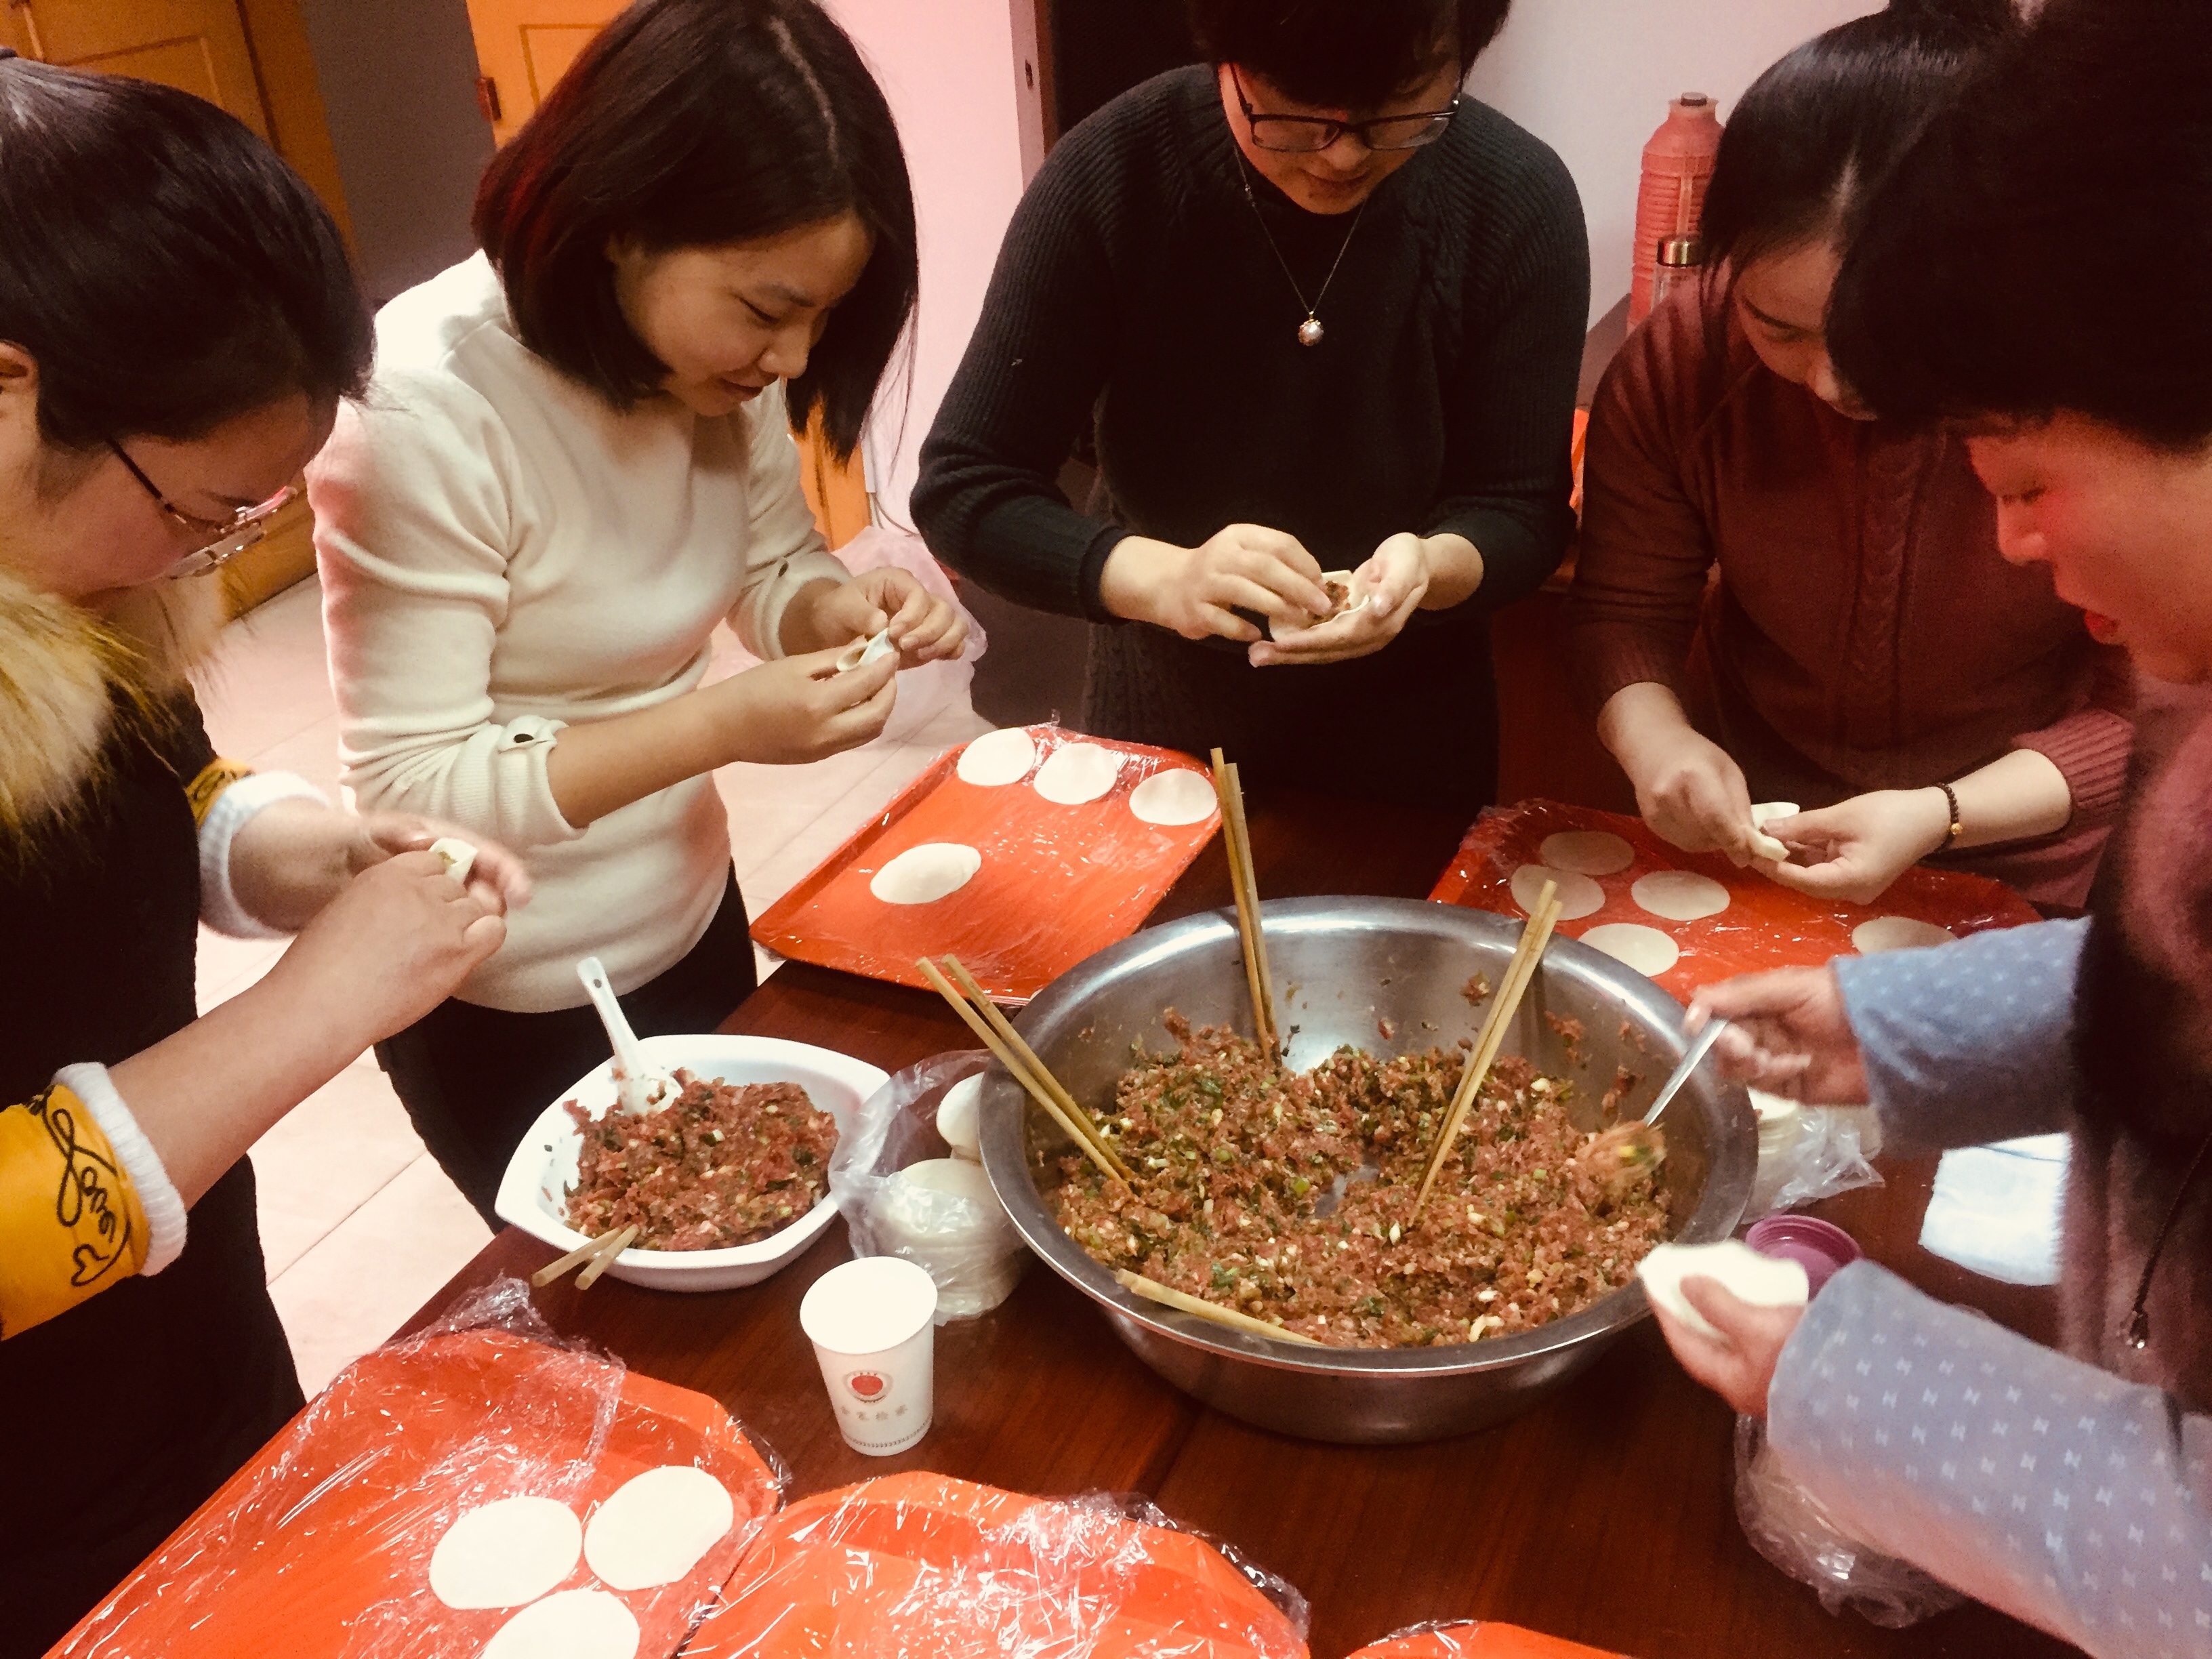 食品工程学院与校美食协会联合举办冬至包饺子大赛-食品工程学院